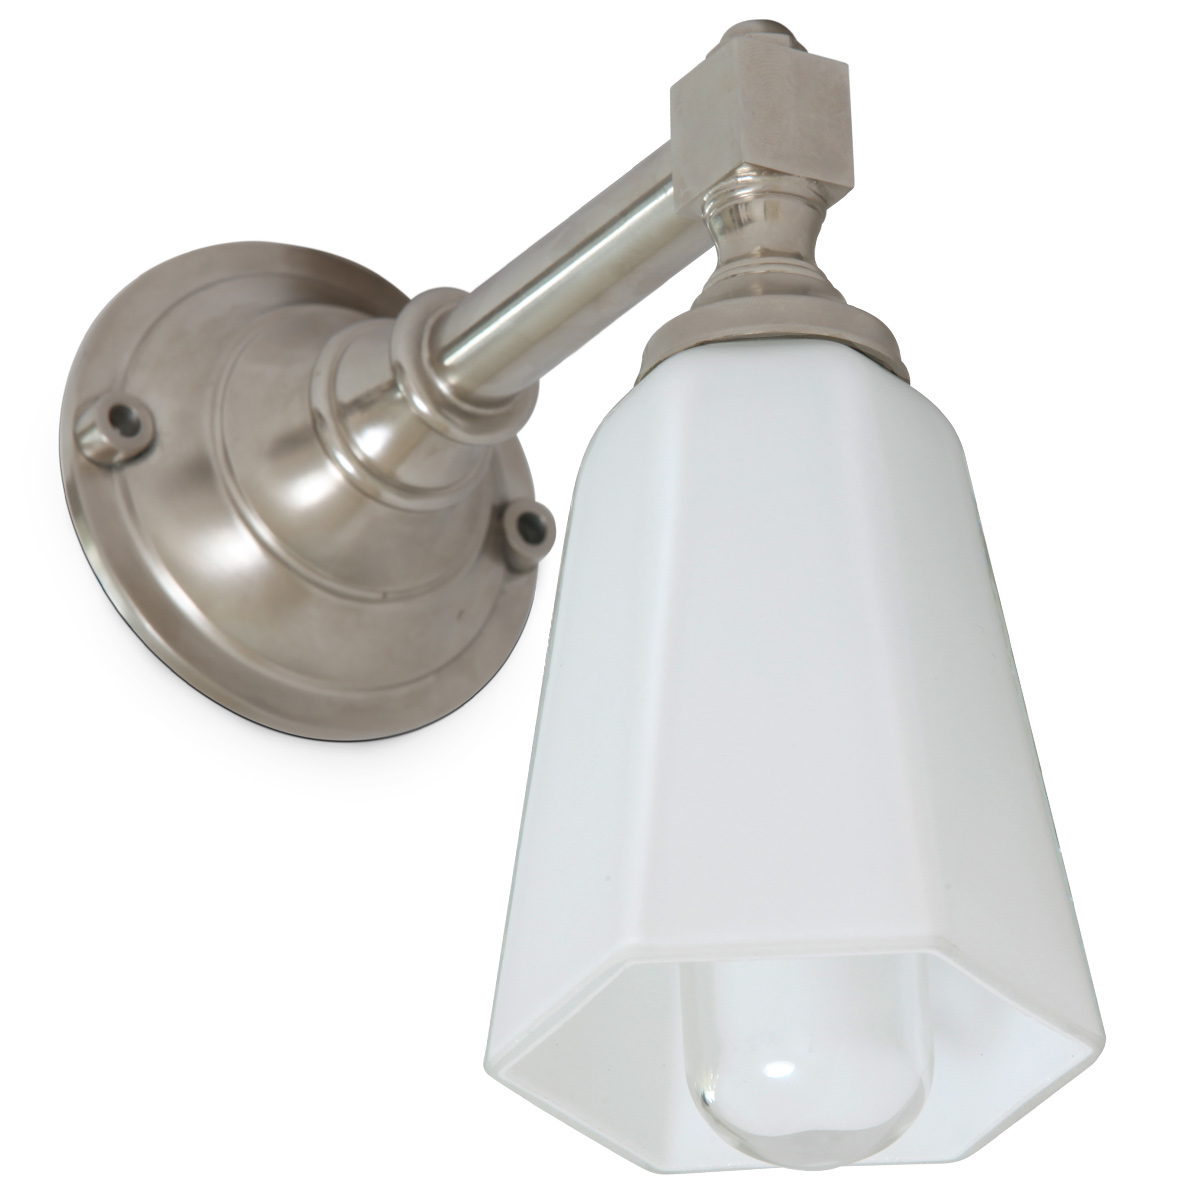 Exklusive Wandleuchte für Badezimmer-Spiegel: Die Wandlampe in Nickel satiniert: Das Leuchtmittel kann durch den mitgelieferten Zylinderglas-Kolben geschützt werden